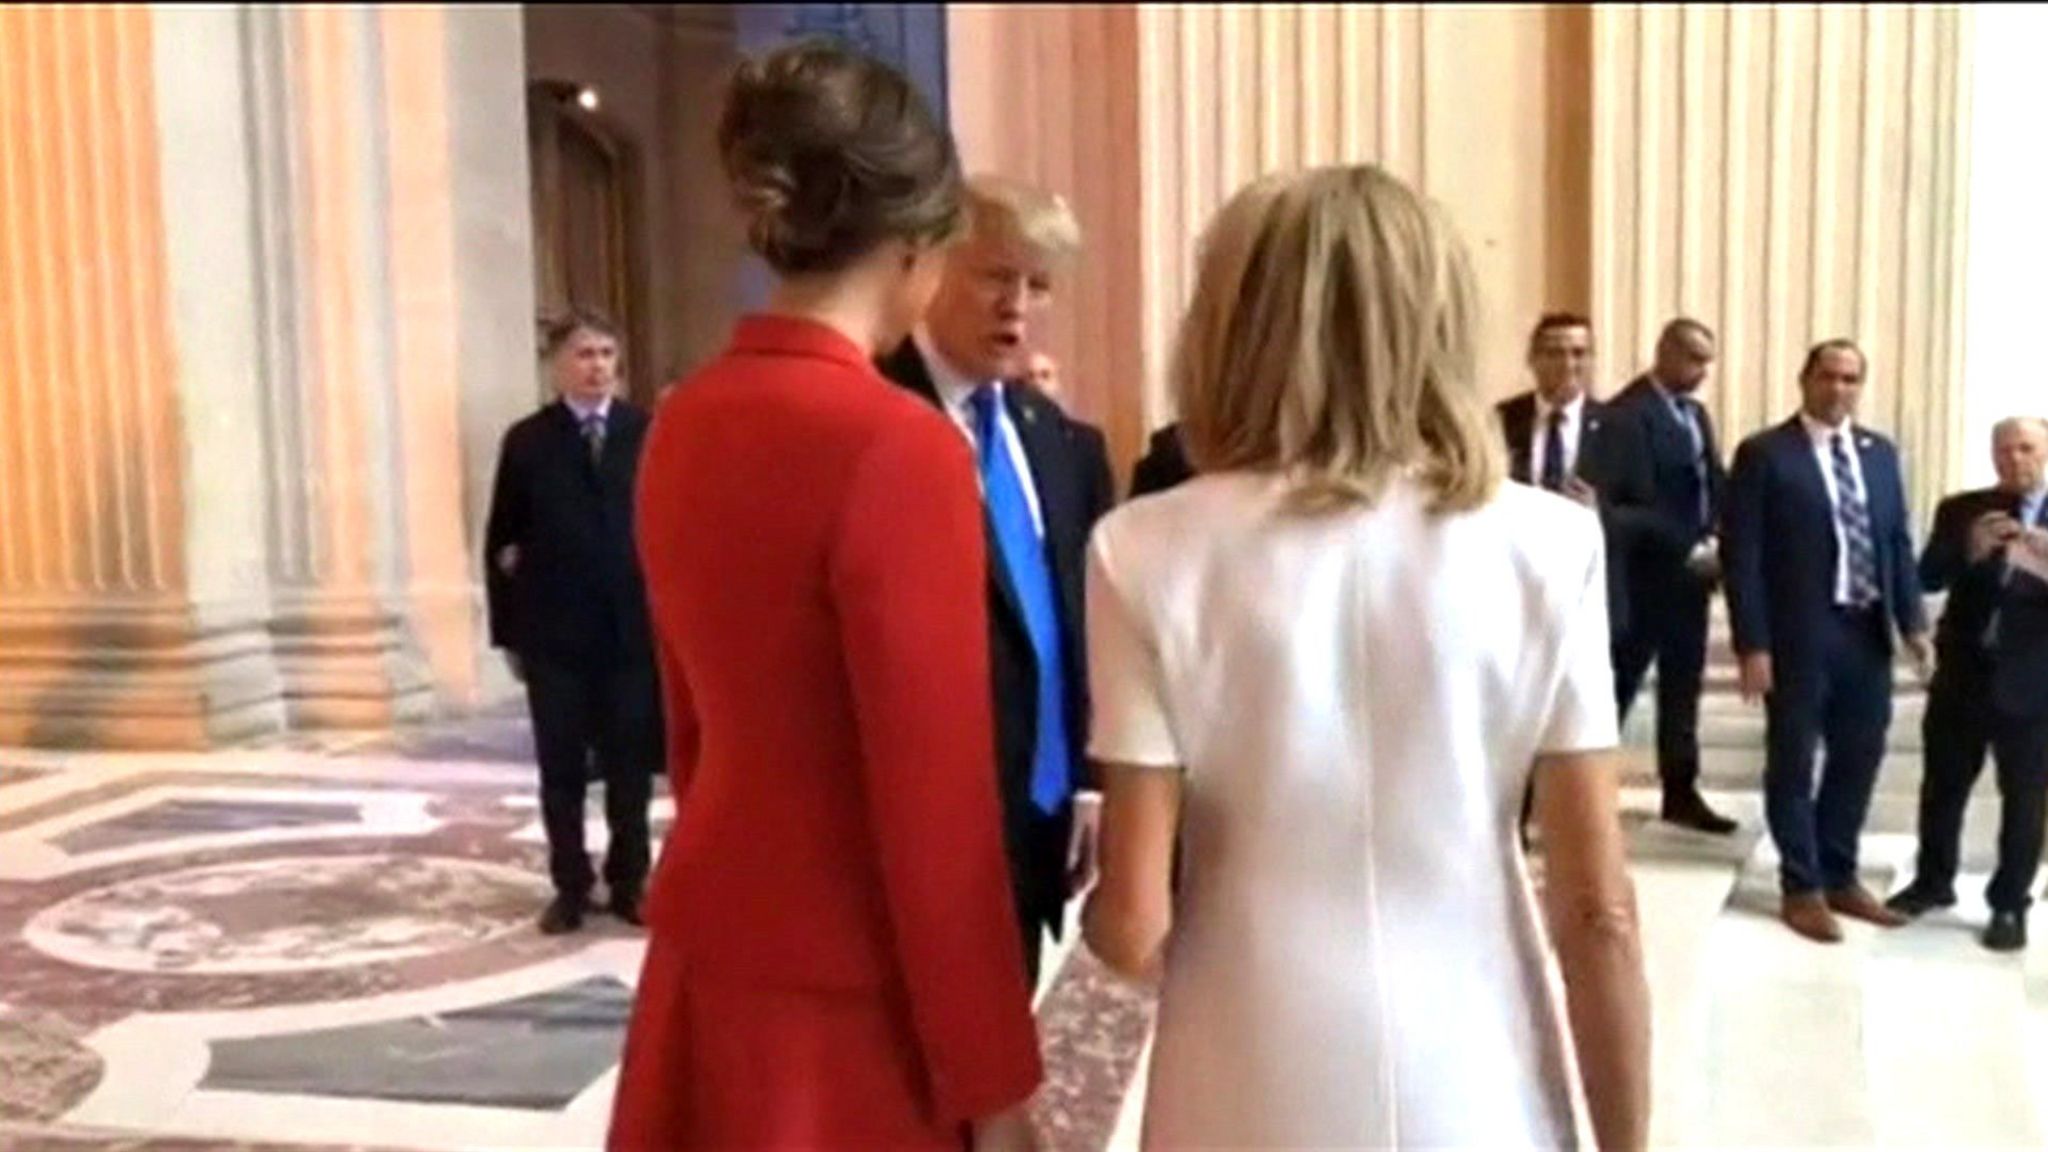 Donald Trump speaking to Brigitte Macron